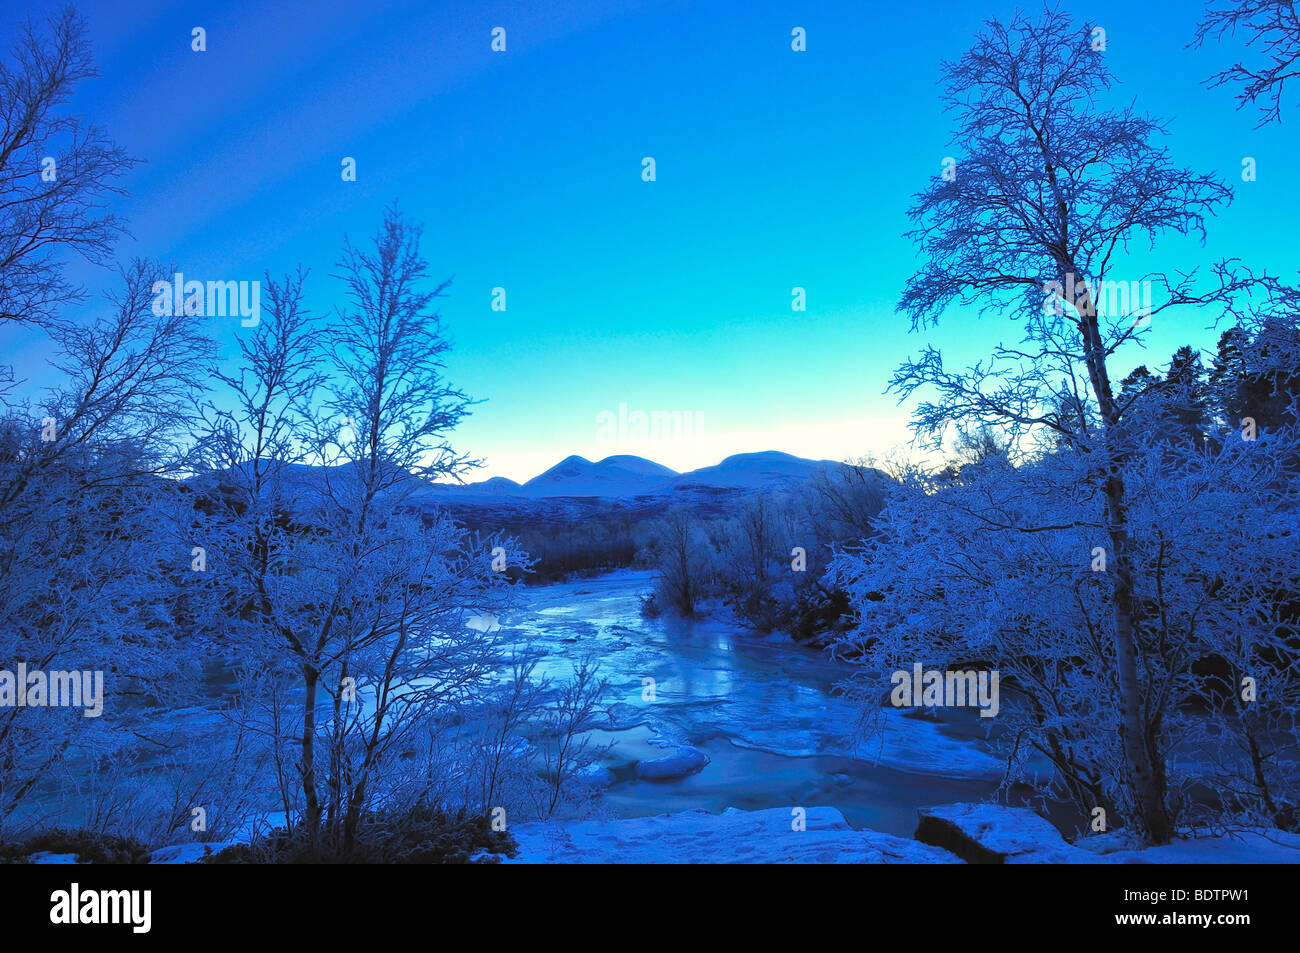 Frozen river abisko national park suède europe winter scenery Banque D'Images